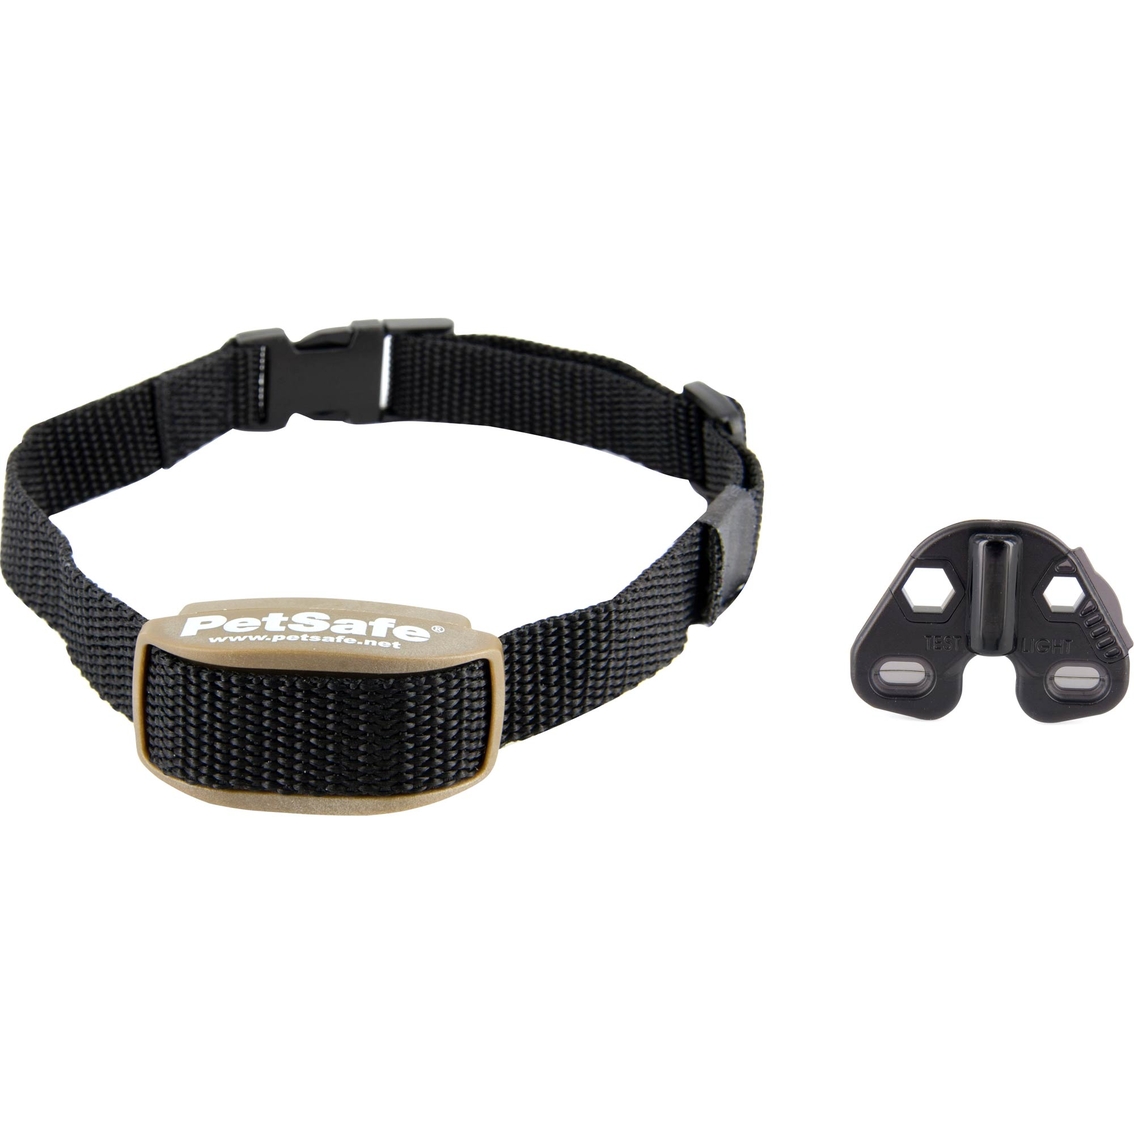 PetSafe Pawz Away Extra Receiver Collar - Image 2 of 2